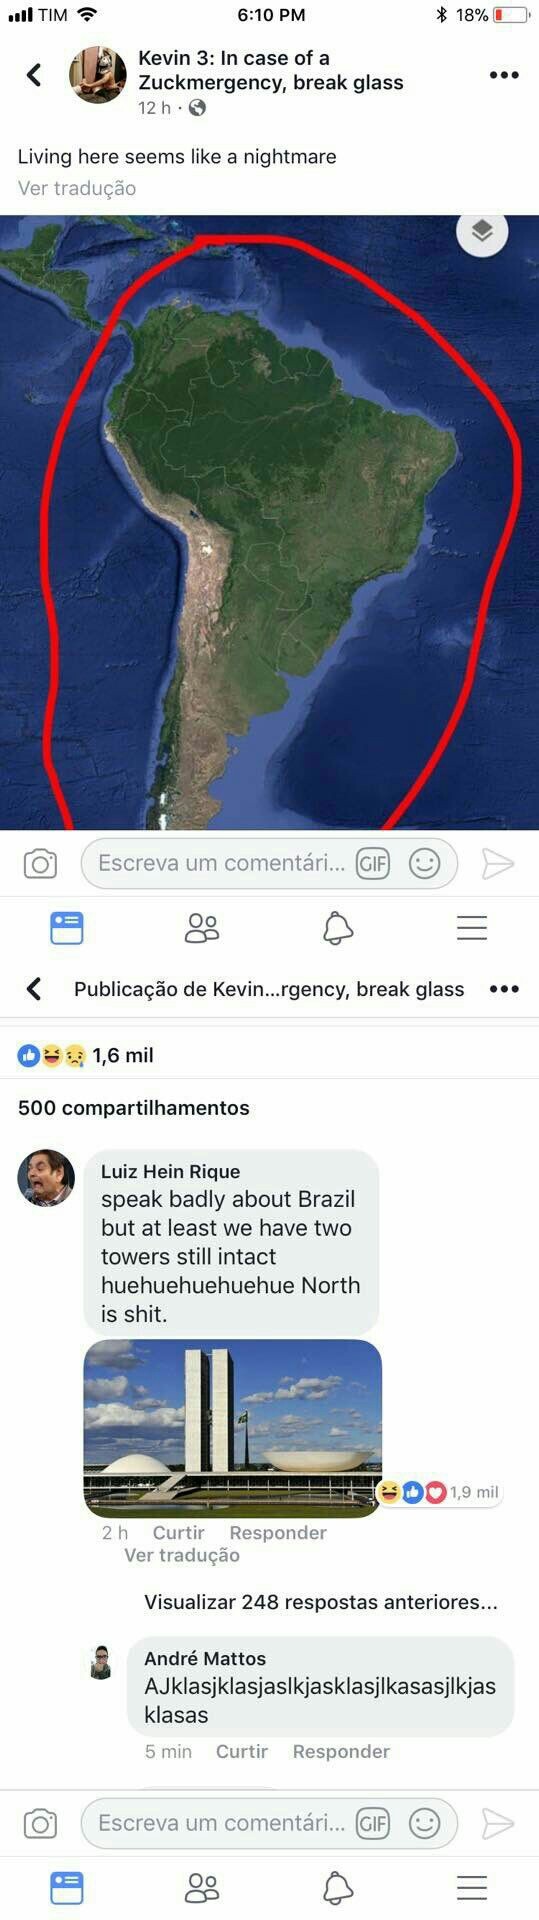 Tradução "Morar aqui deve ser um pesadelo" "Fala mal do Brasil mas pelo menos a gente tem duas torres intactas" - meme